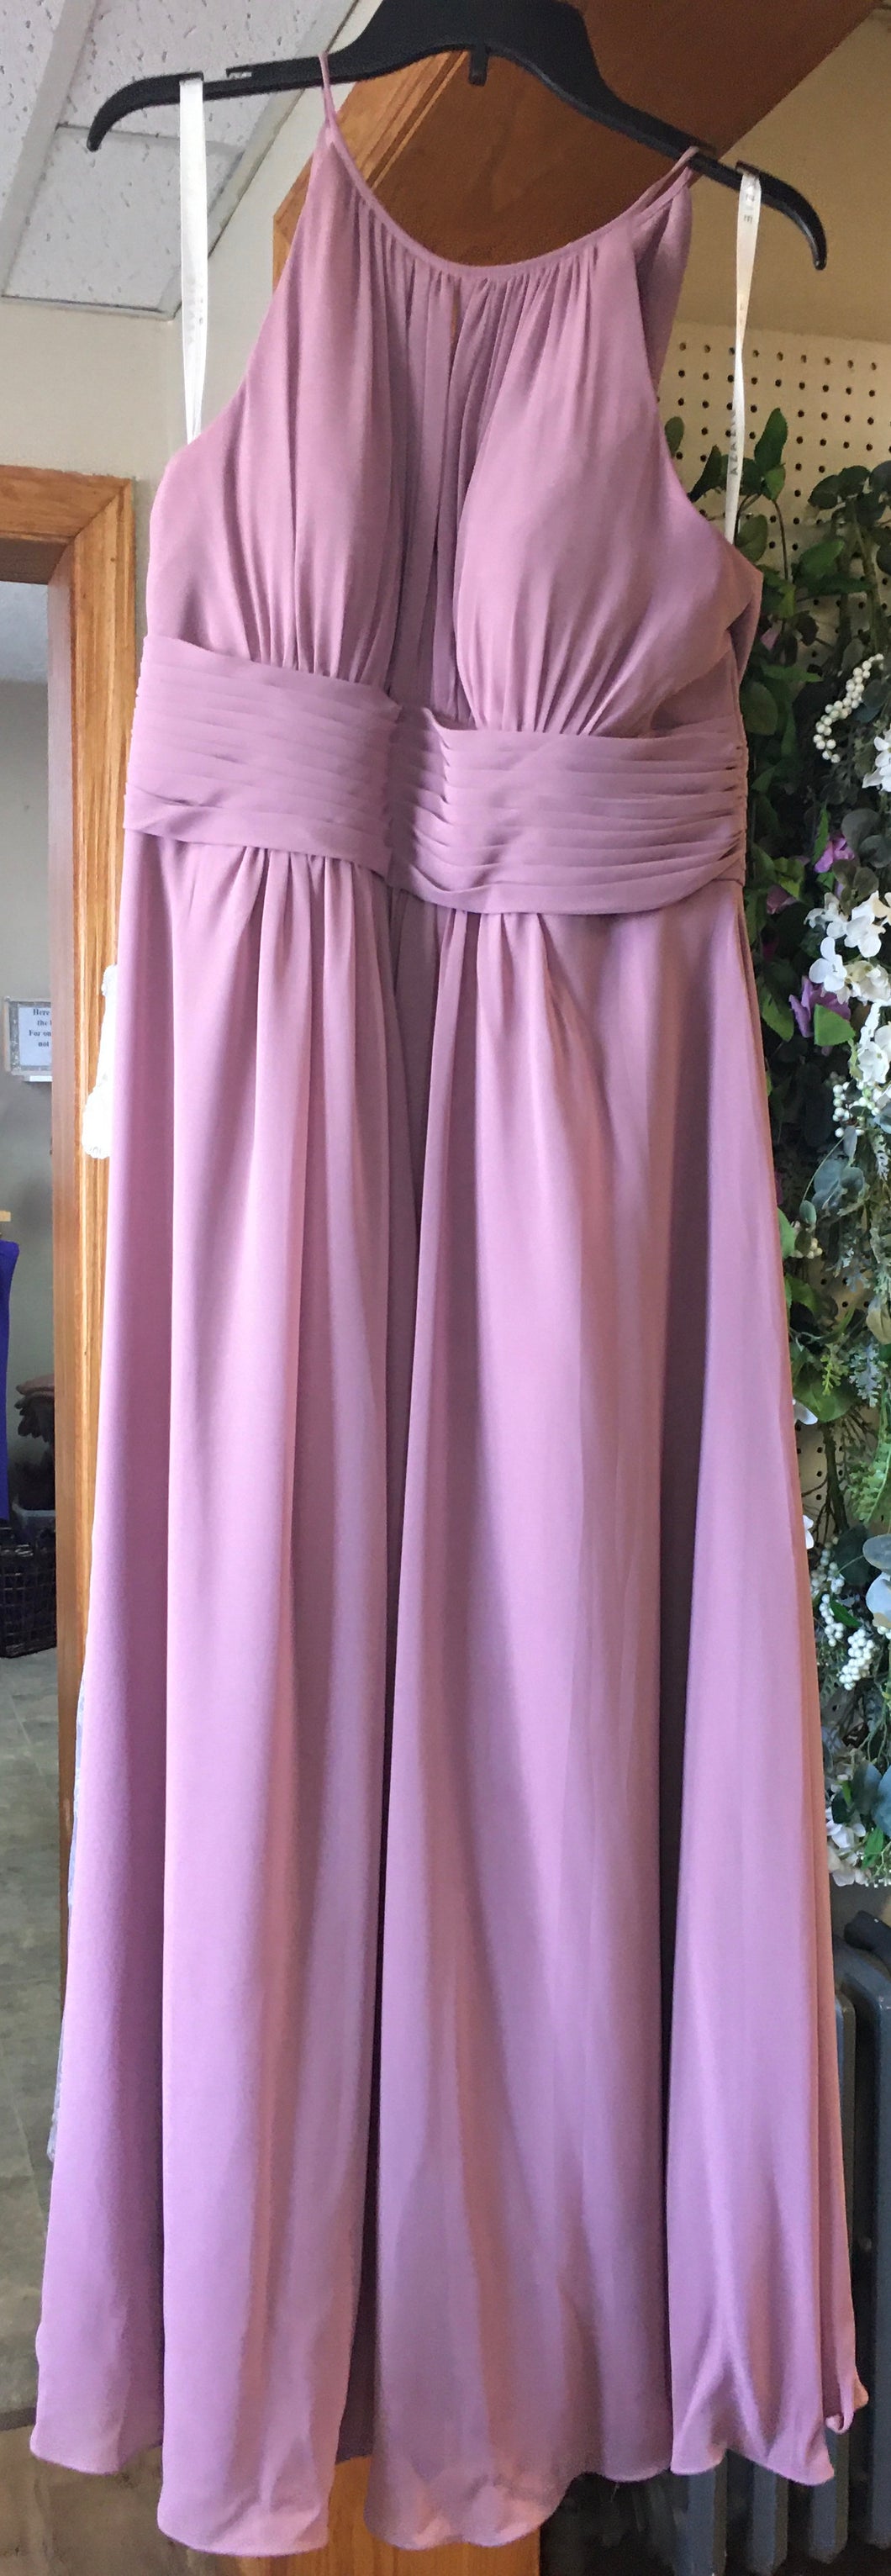 STEV200-D Dusty Mauve Gown, Size 16